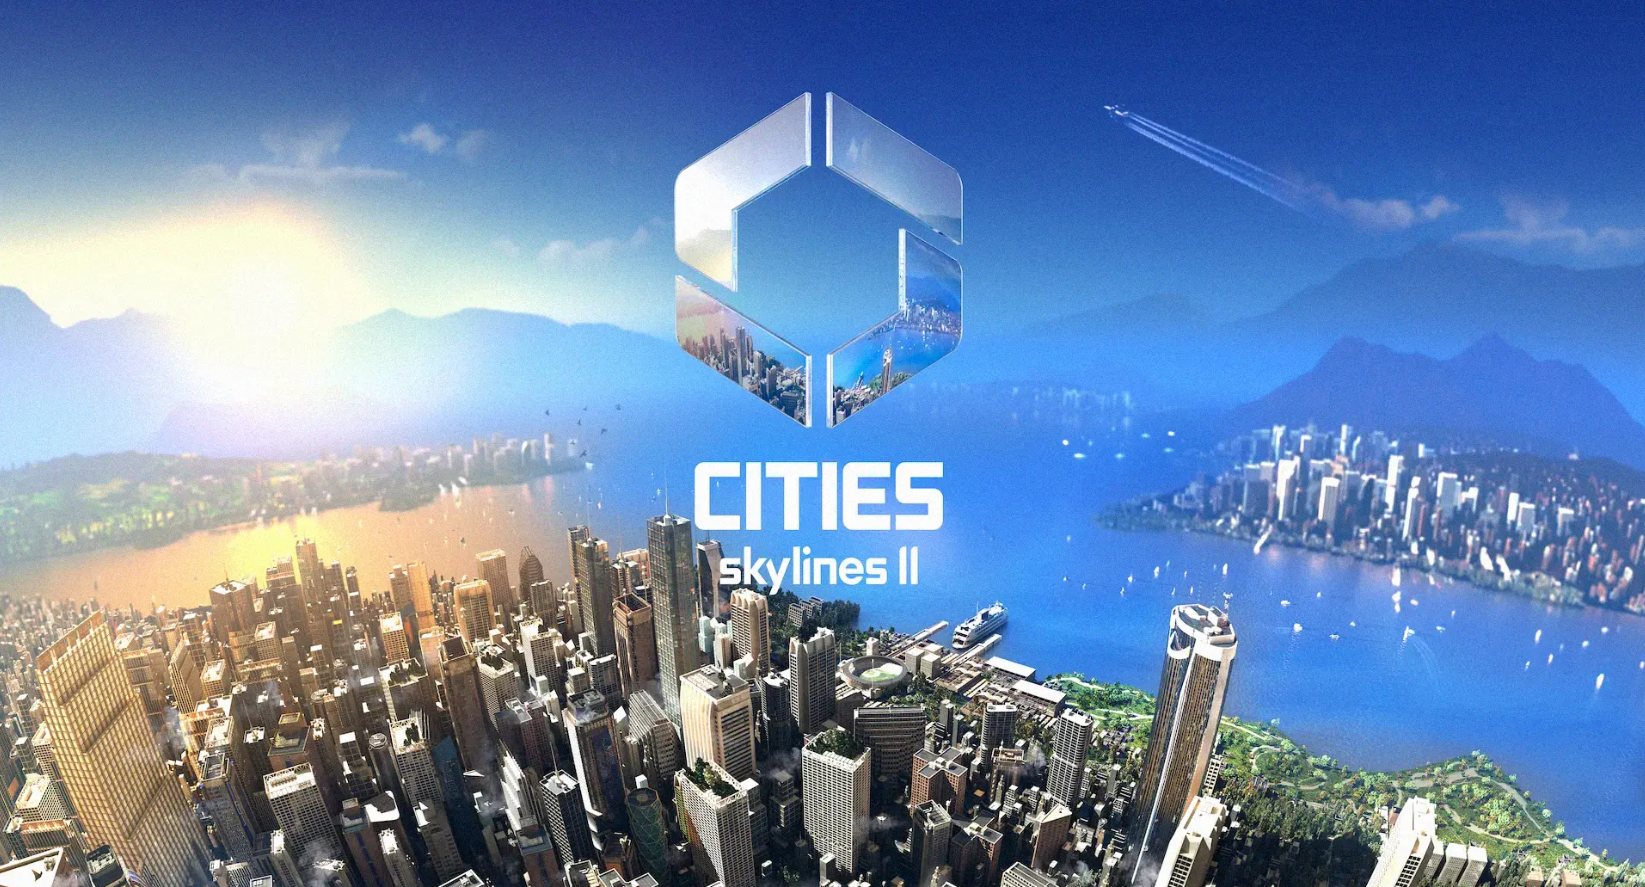 Outra bomba? Cities Skylines 2 tem polêmica antes da estreia